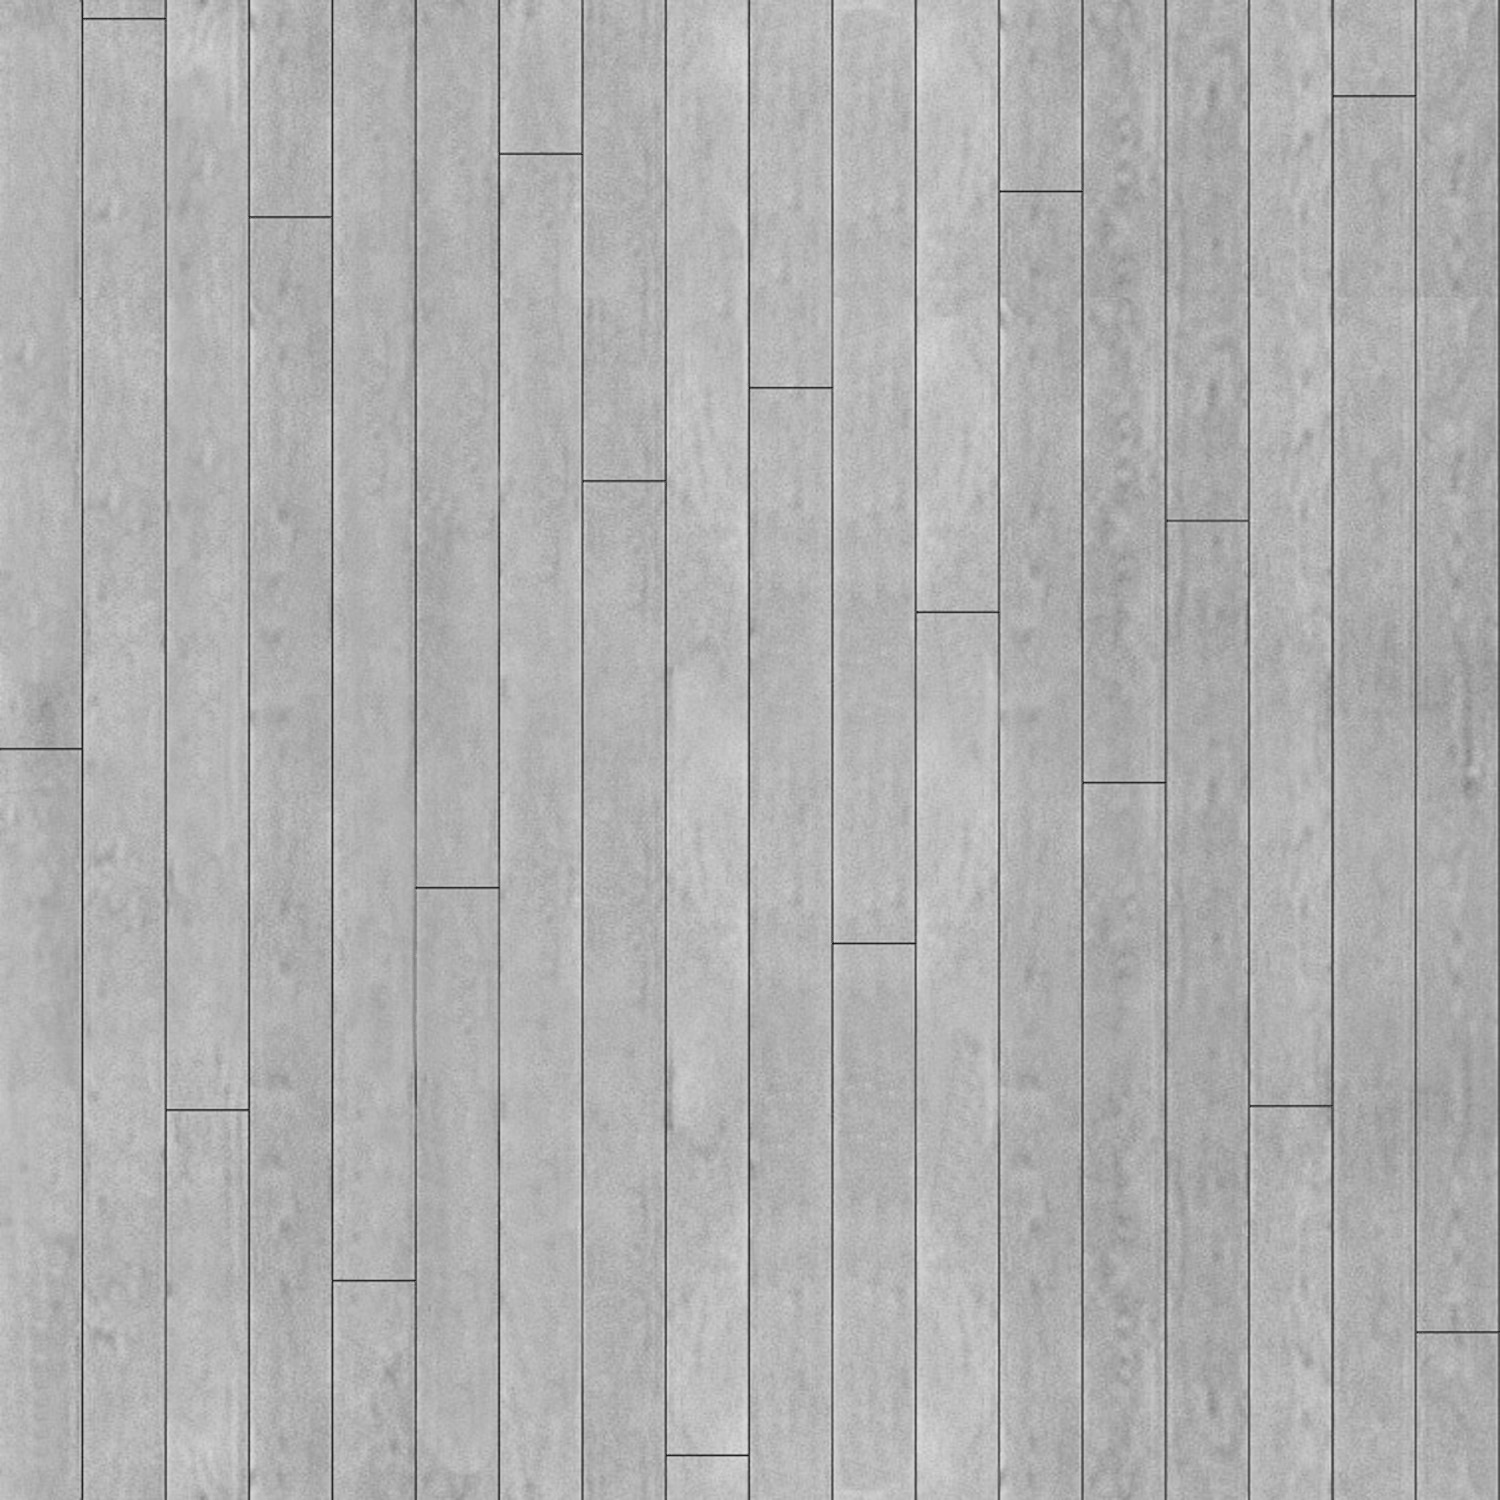 wood floor 1 V.jpg